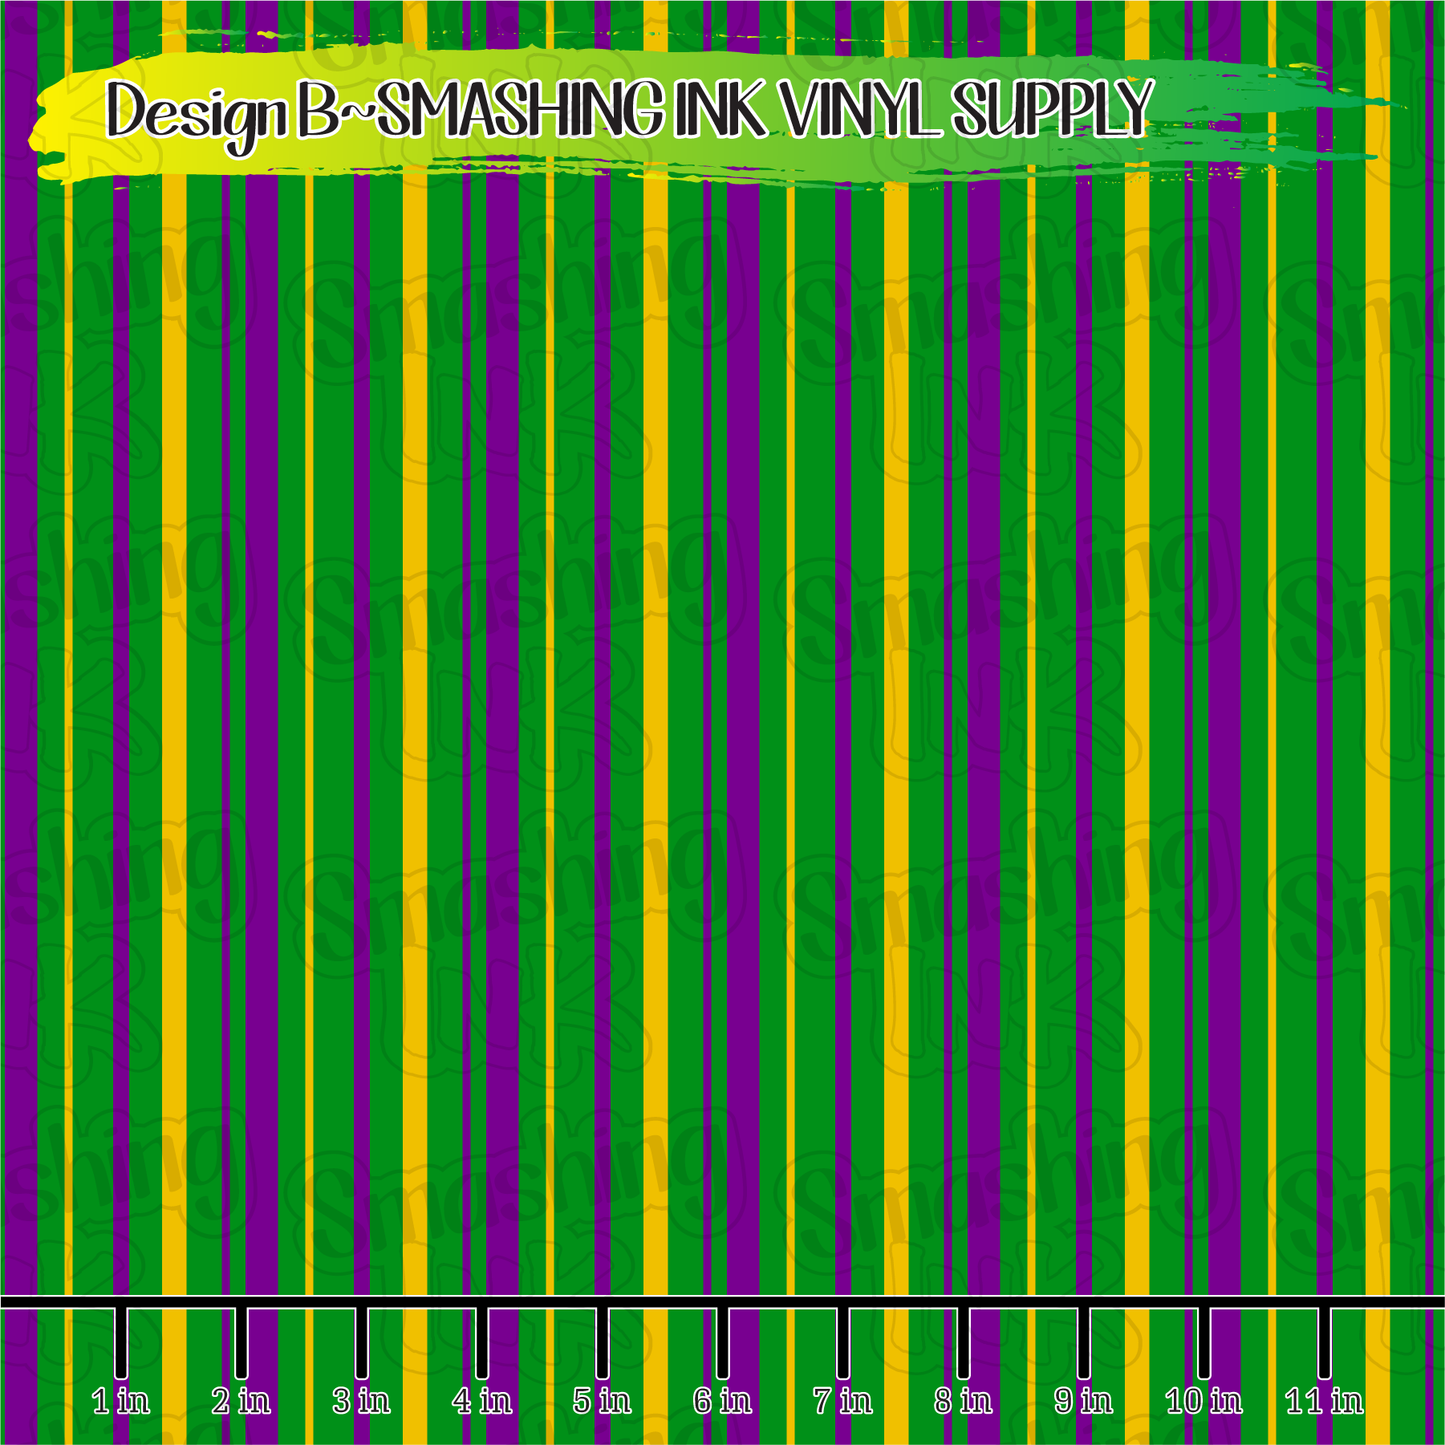 Mardi Gras Stripes ★ Pattern Vinyl | Faux Leather | Sublimation (TAT 3 BUS DAYS)